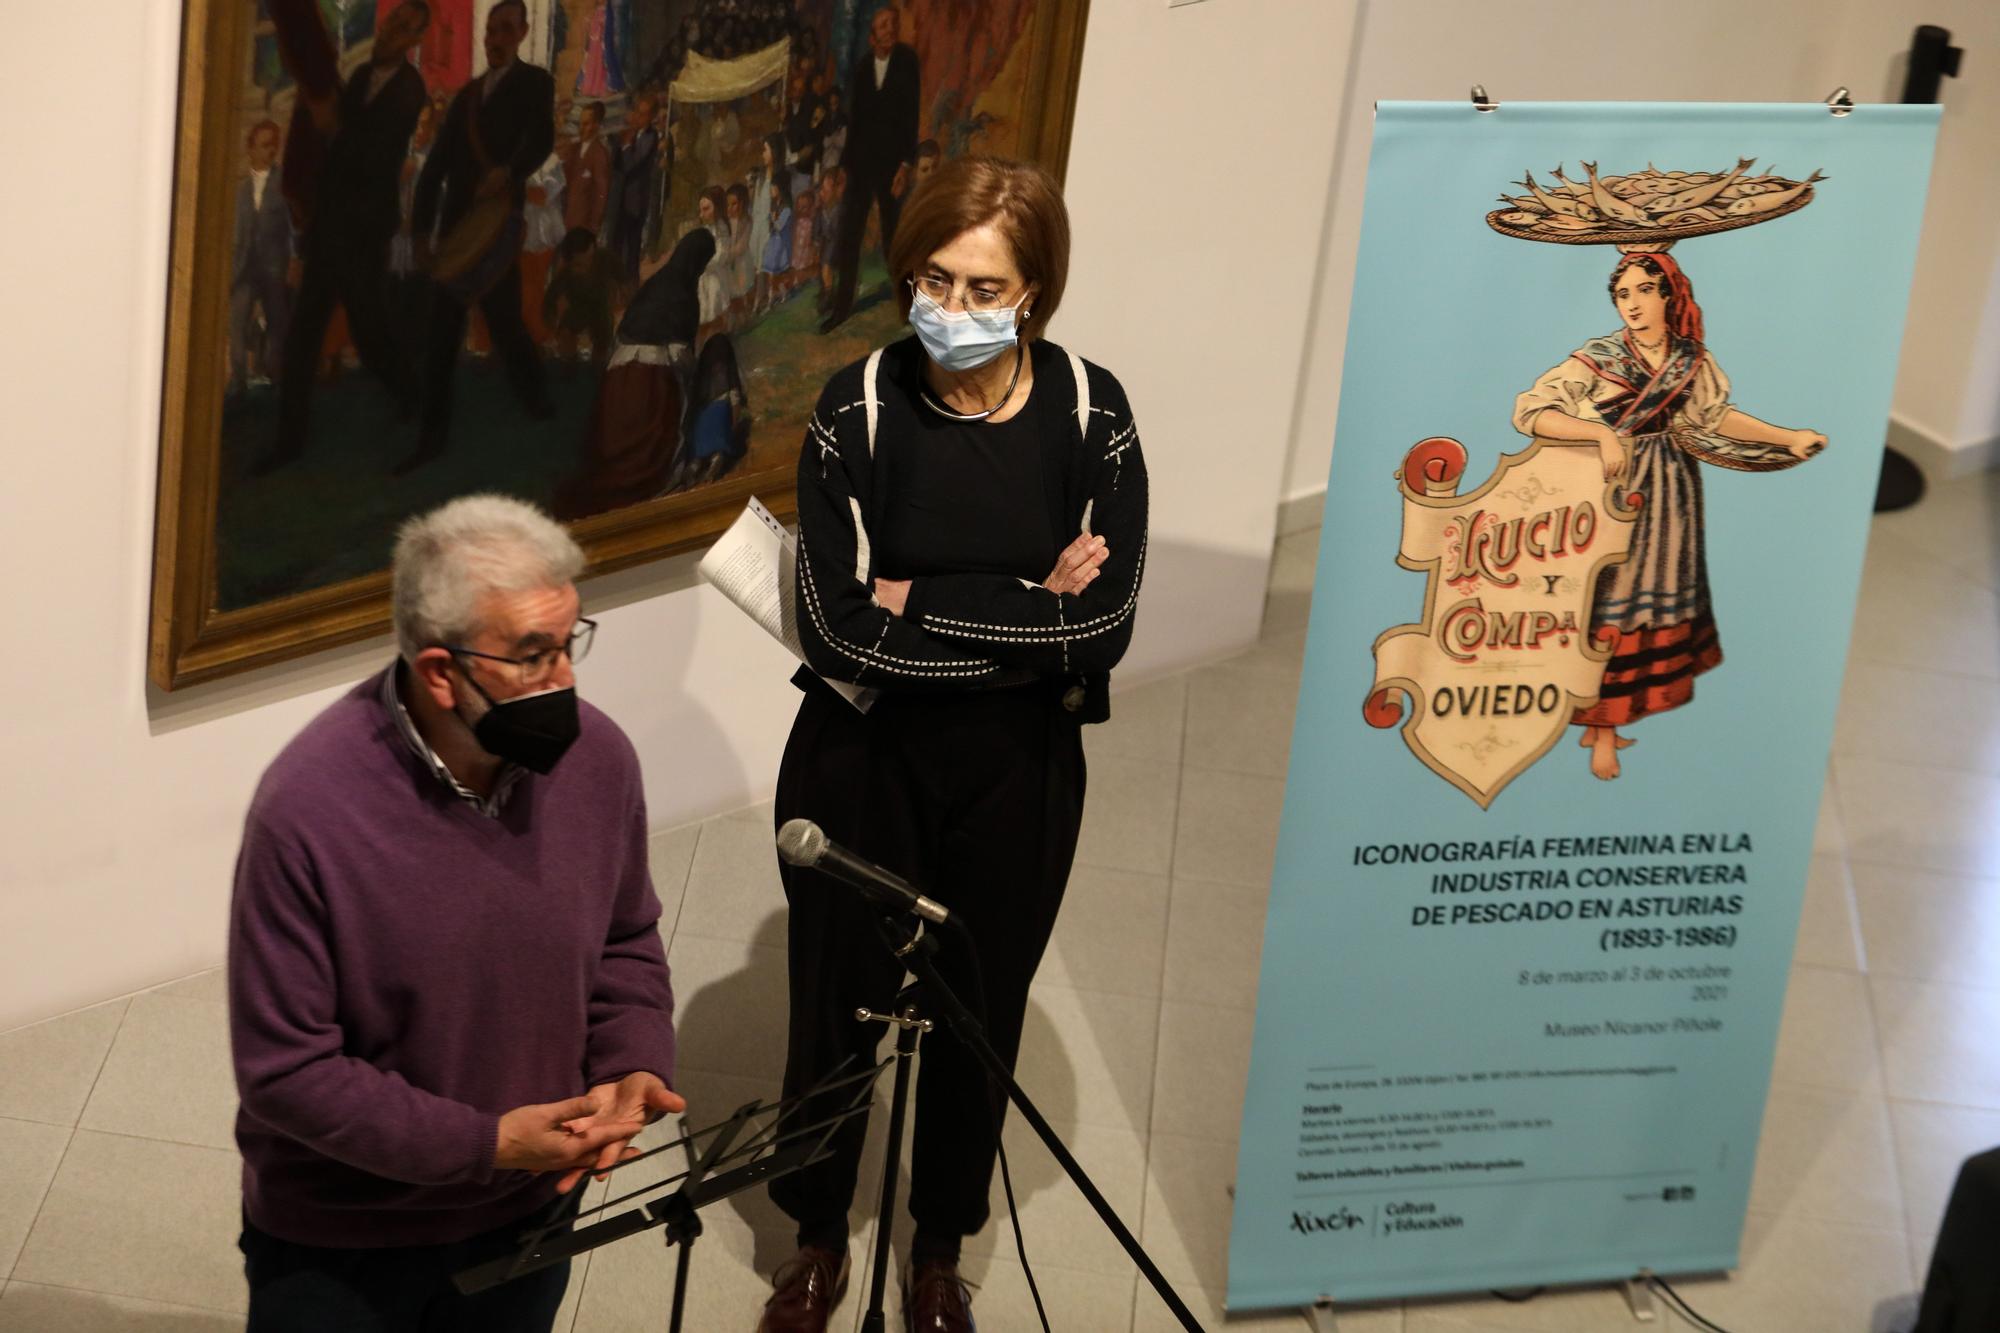 La alcaldesa de Gijón asiste a la inauguración de la exposición iconográfica femenina en la industria conservera